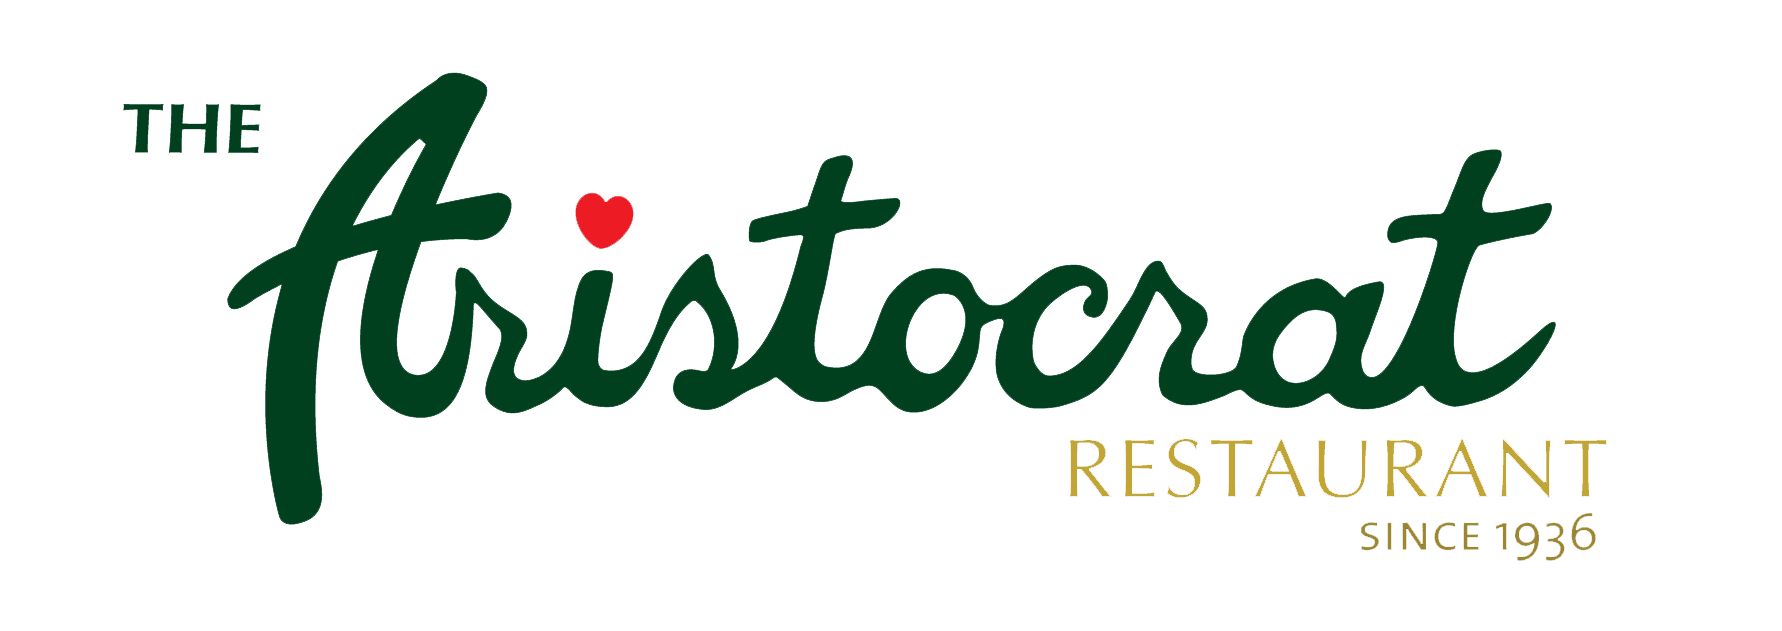 Aristocrat Logo - The Aristocrat Restaurant: Home of the Best Chicken BBQ. Philippine